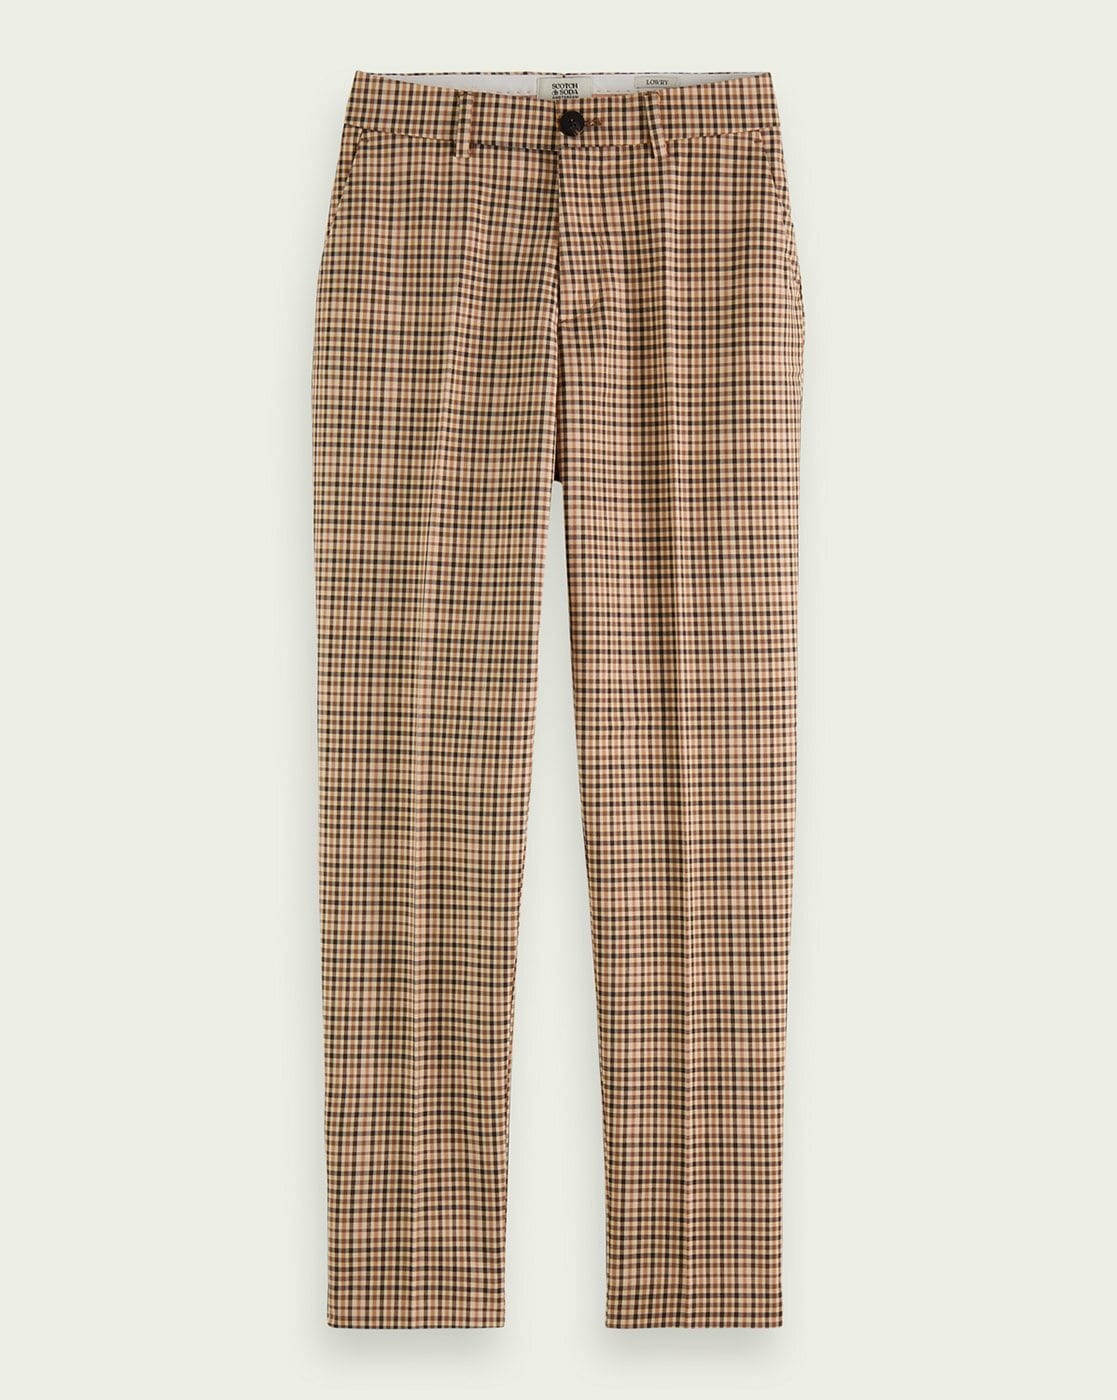 Buy Beige Trousers  Pants for Women by SCOTCH  SODA Online  Ajiocom